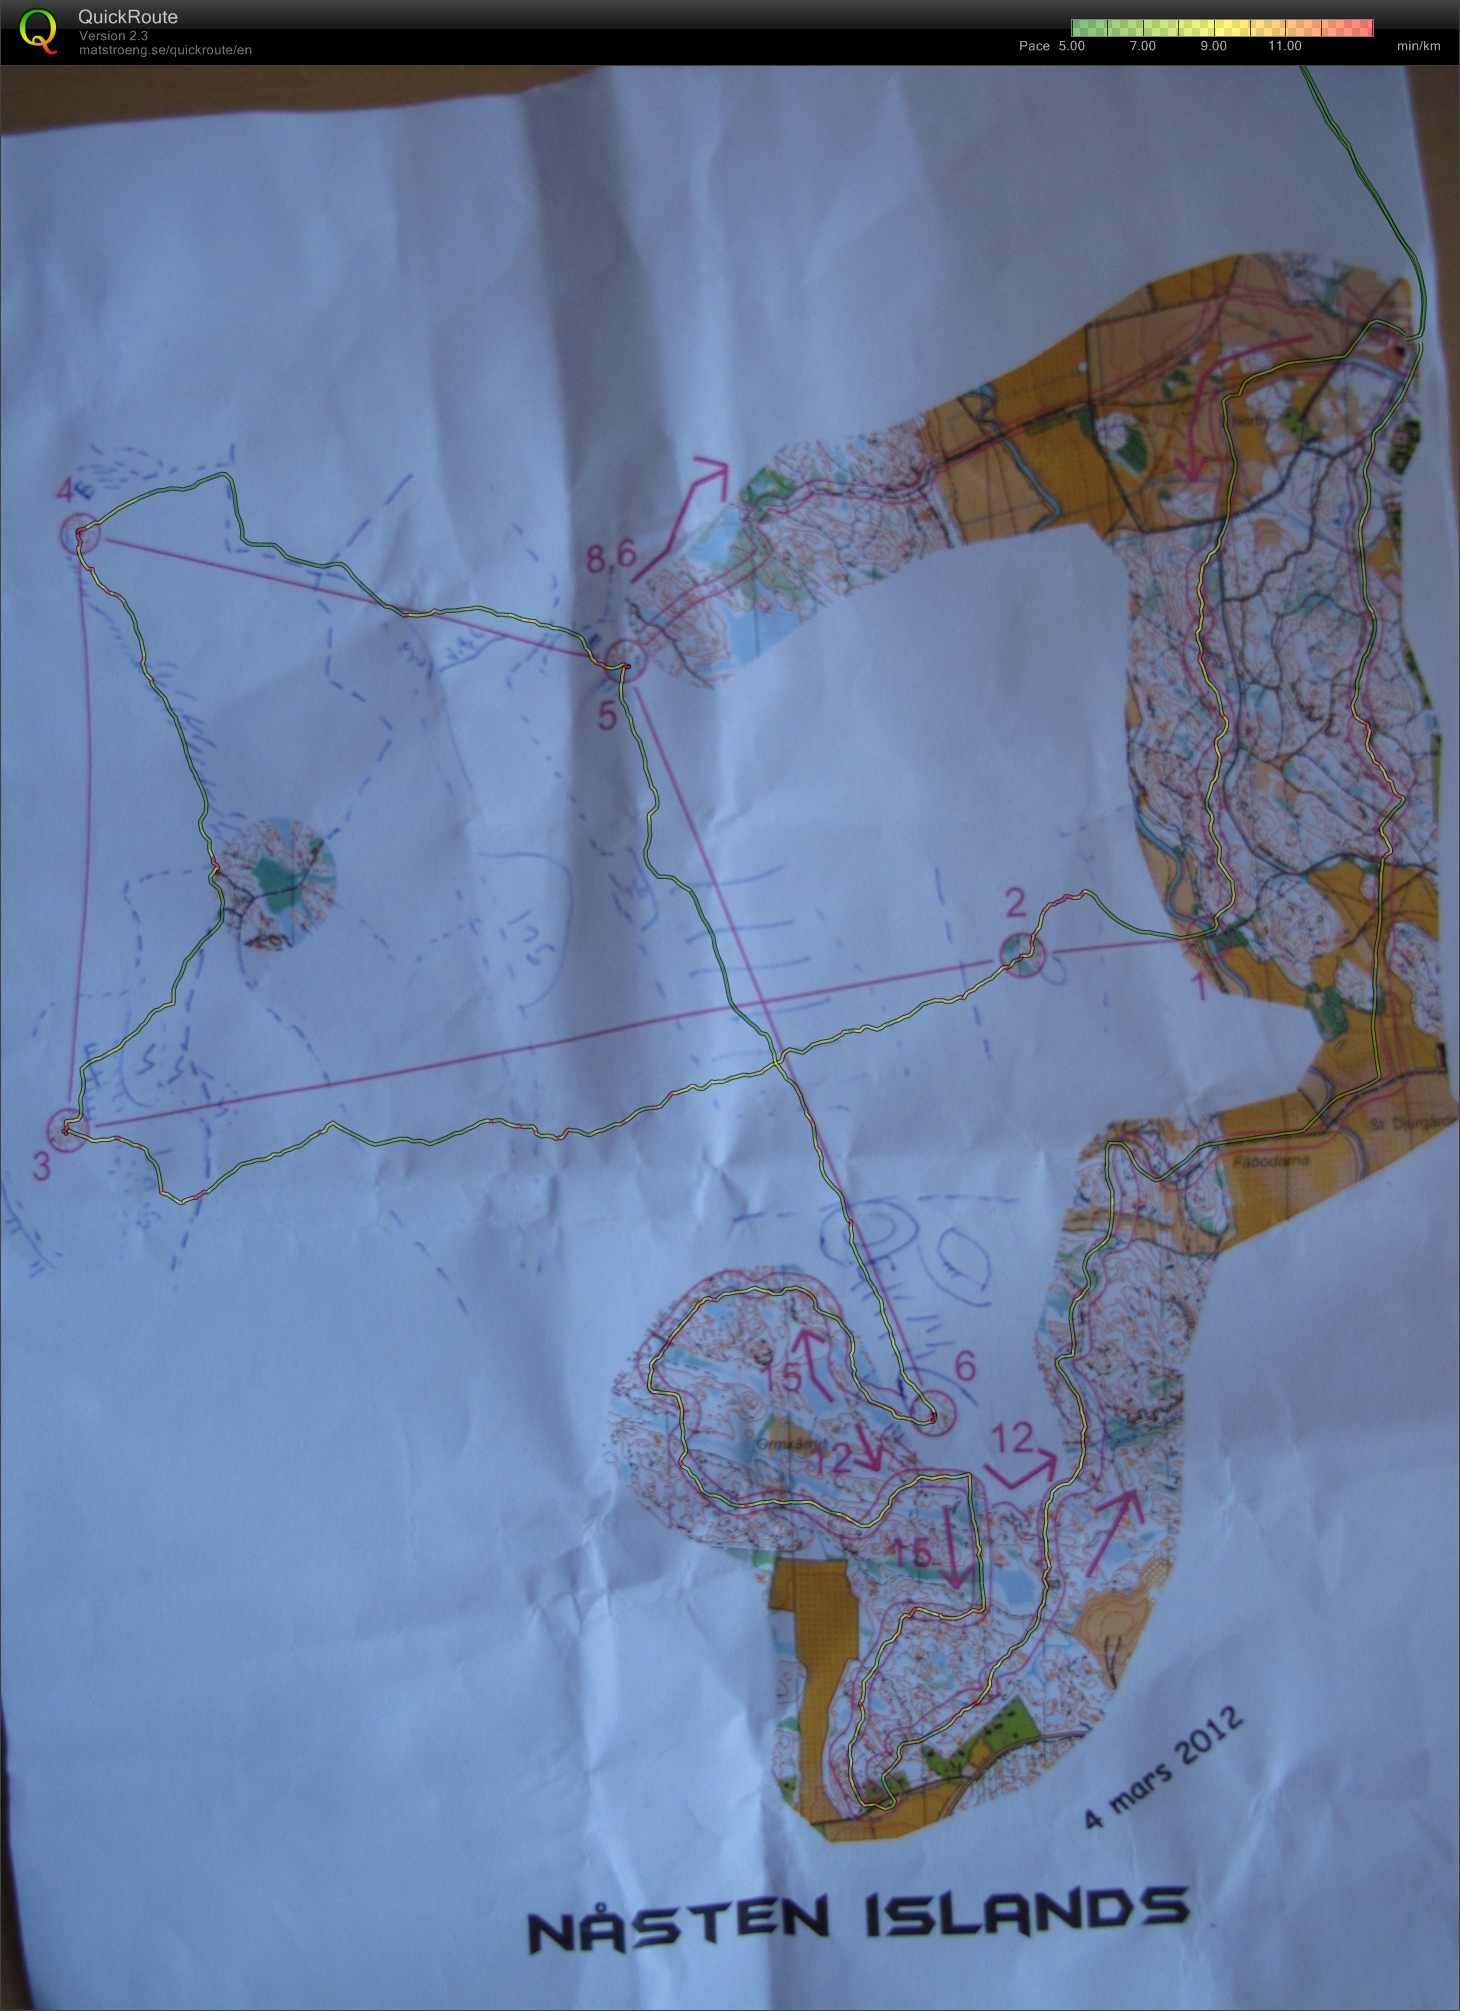 Nåsten Islands Training (2012-03-04)